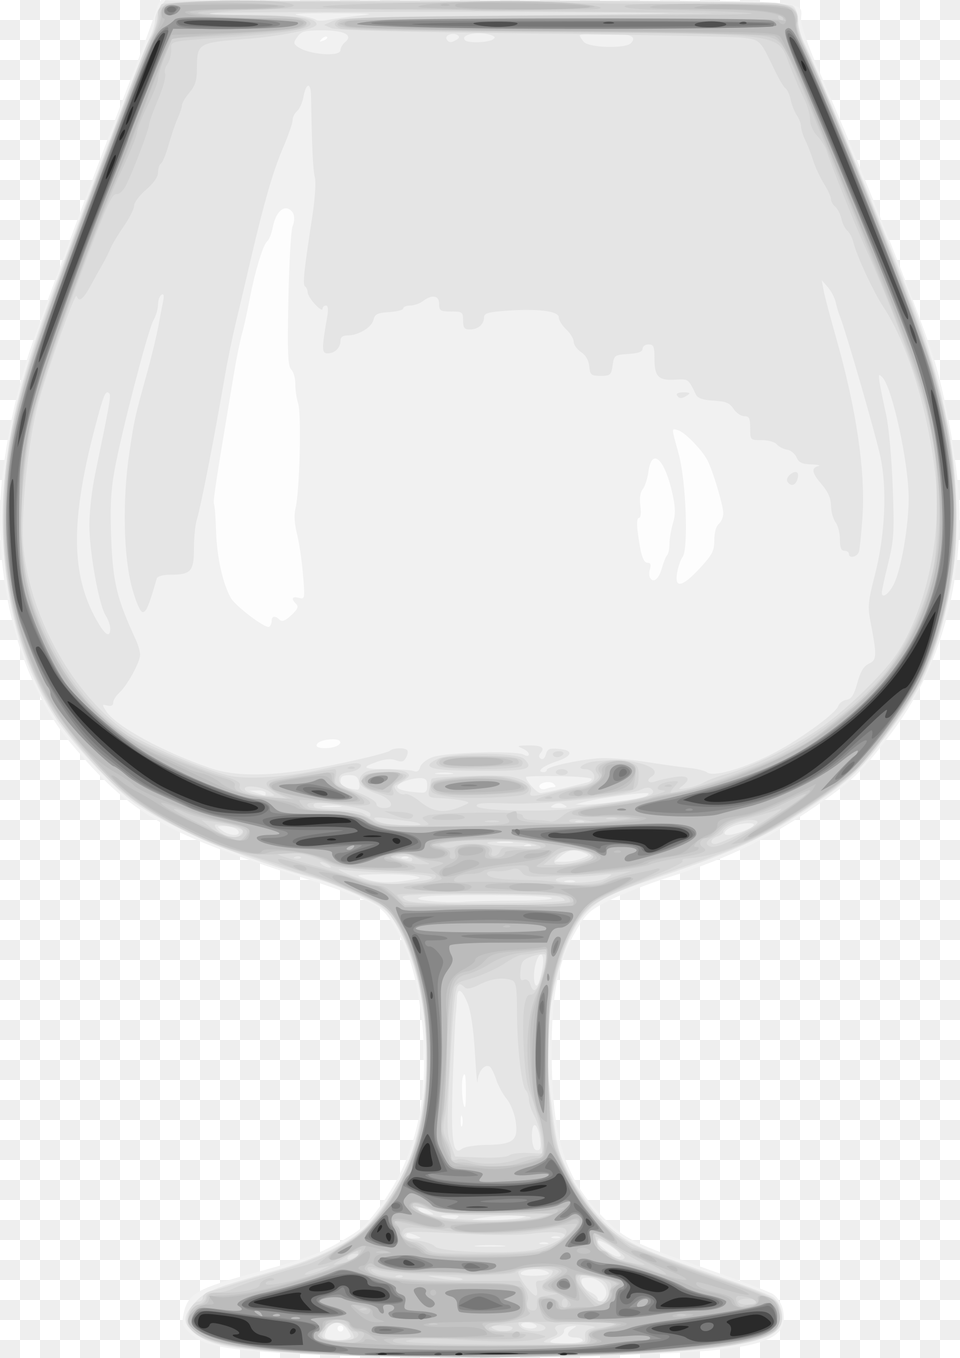 Brandy Snifter, Alcohol, Beverage, Glass, Goblet Free Transparent Png